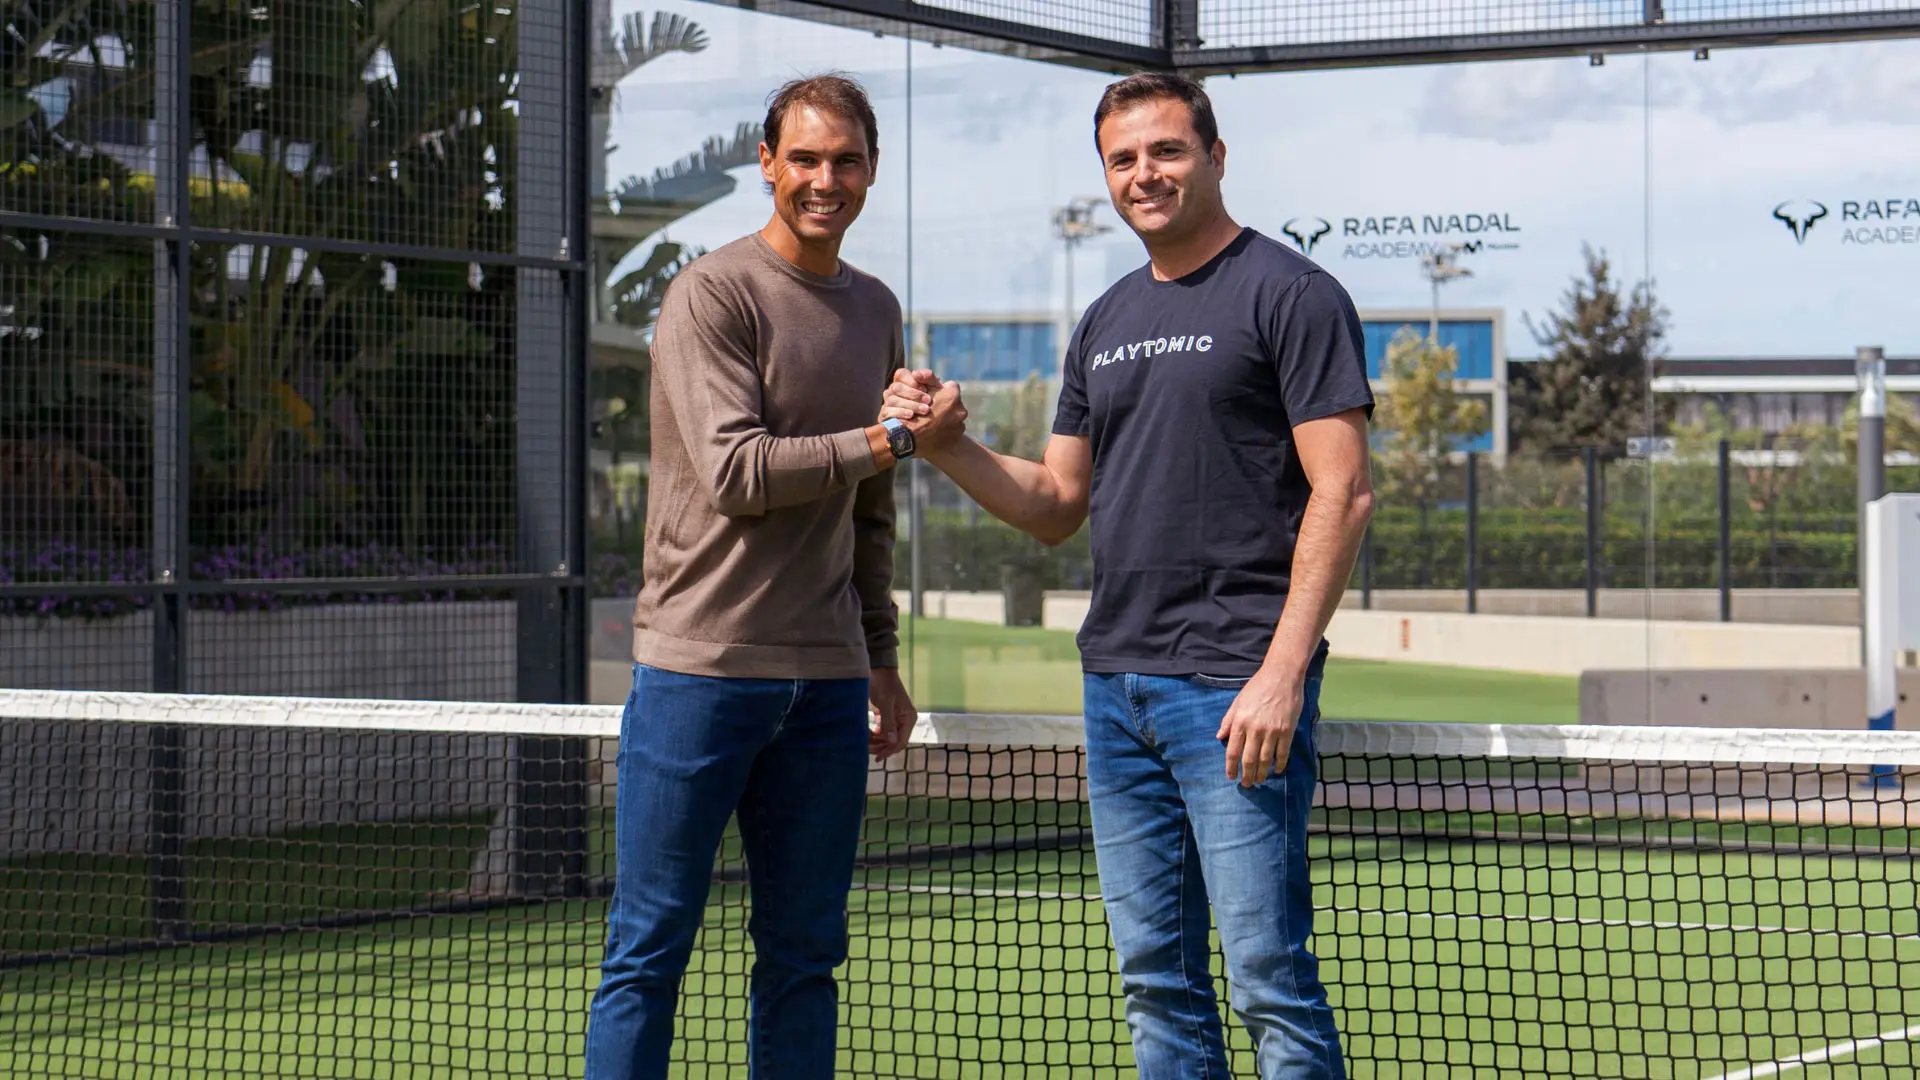 Rafael Nadal se convierte en accionista de Playtomic